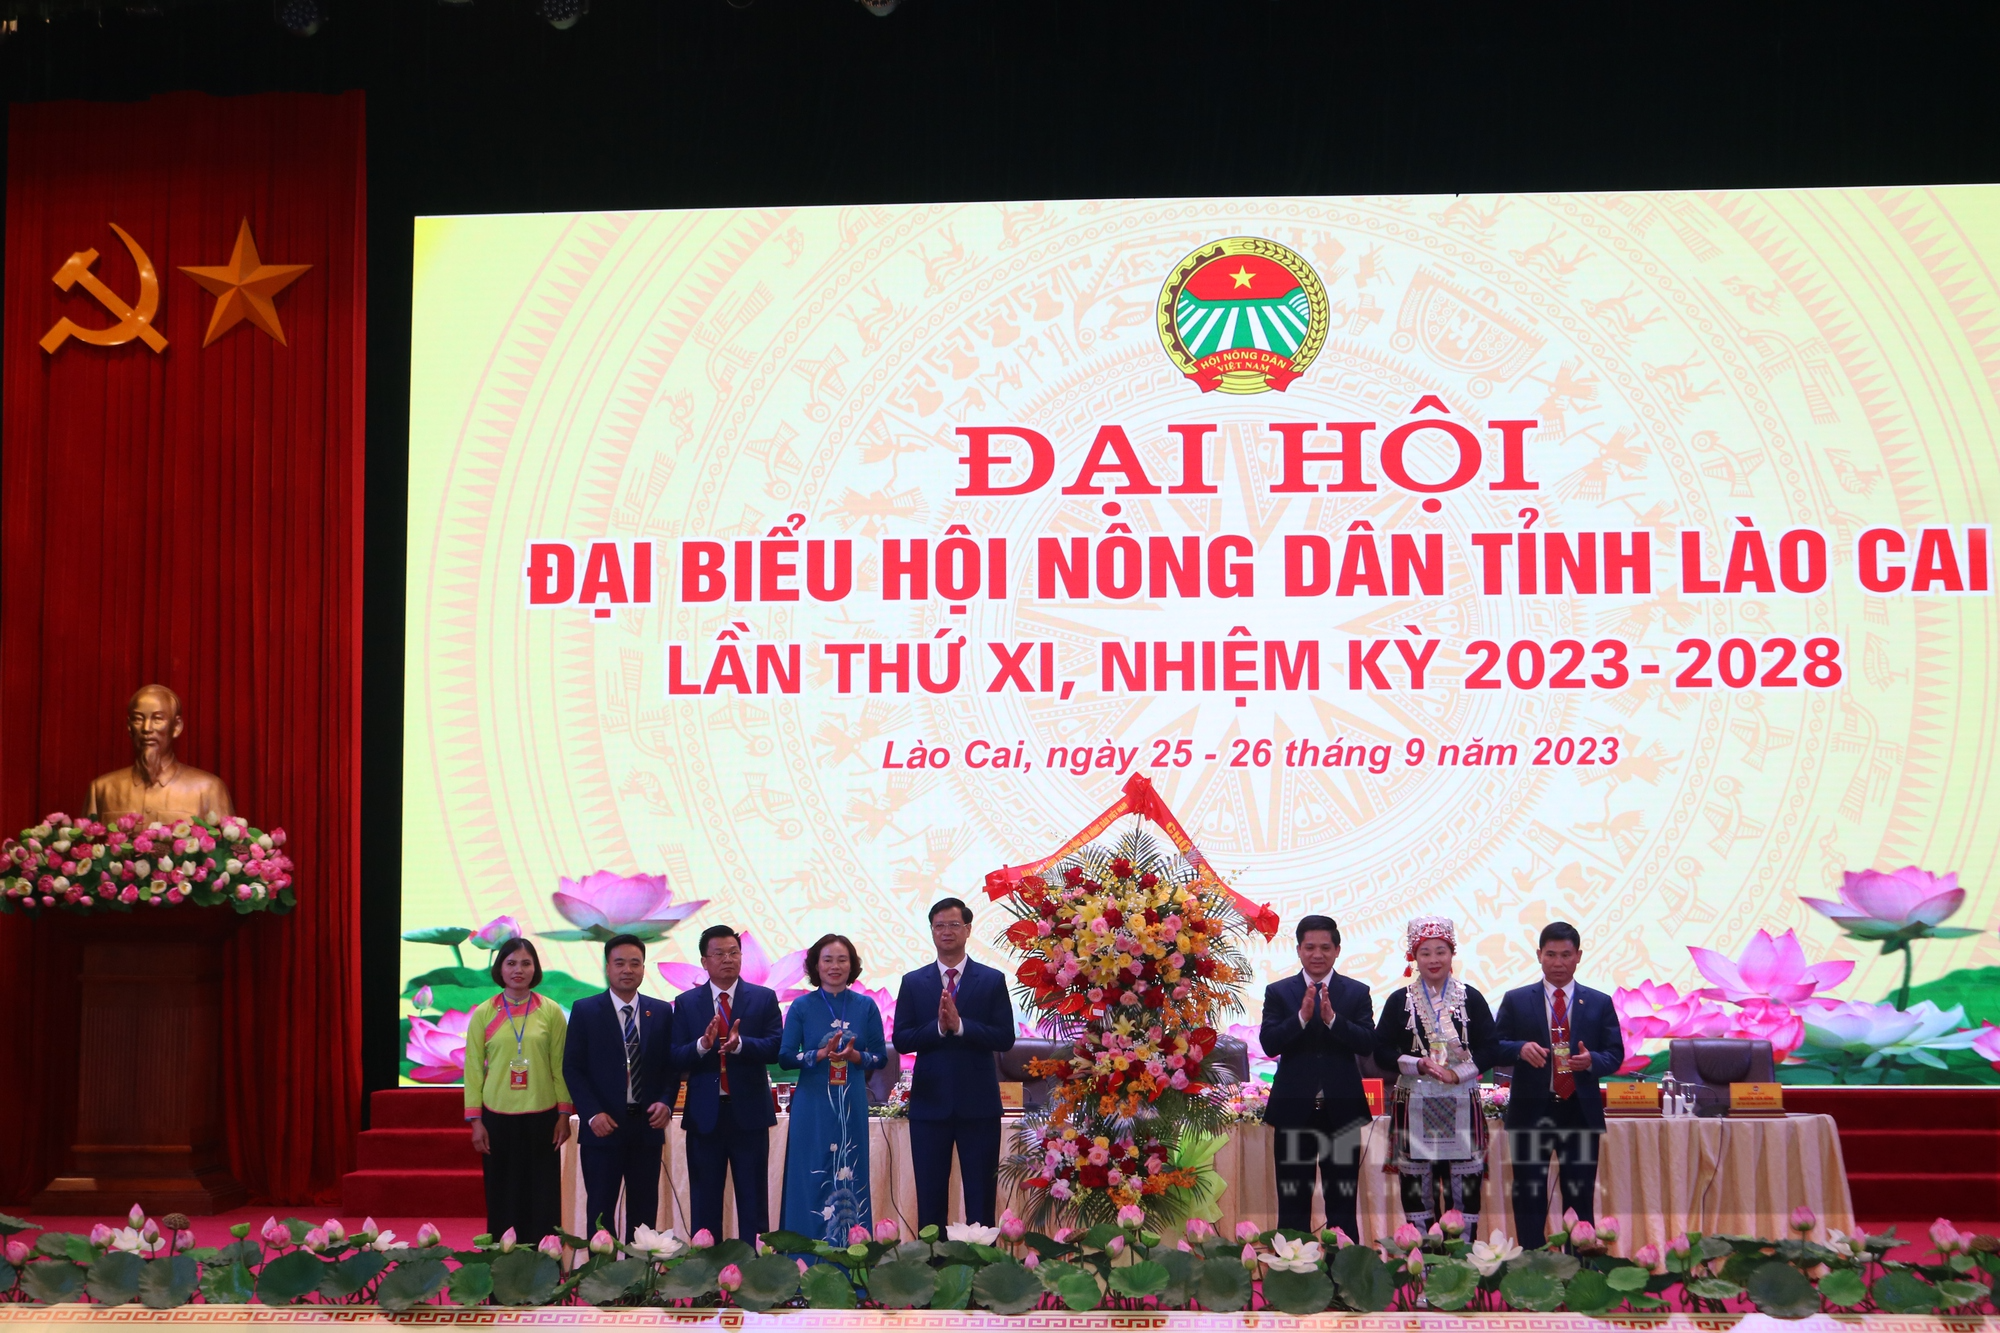 Phó Chủ tịch HNDVN Phạm Tiến Nam: Hỗ trợ nông dân Lào Cai phát triển nông, lâm nghiệp theo hướng sản xuất hàng hóa - Ảnh 2.